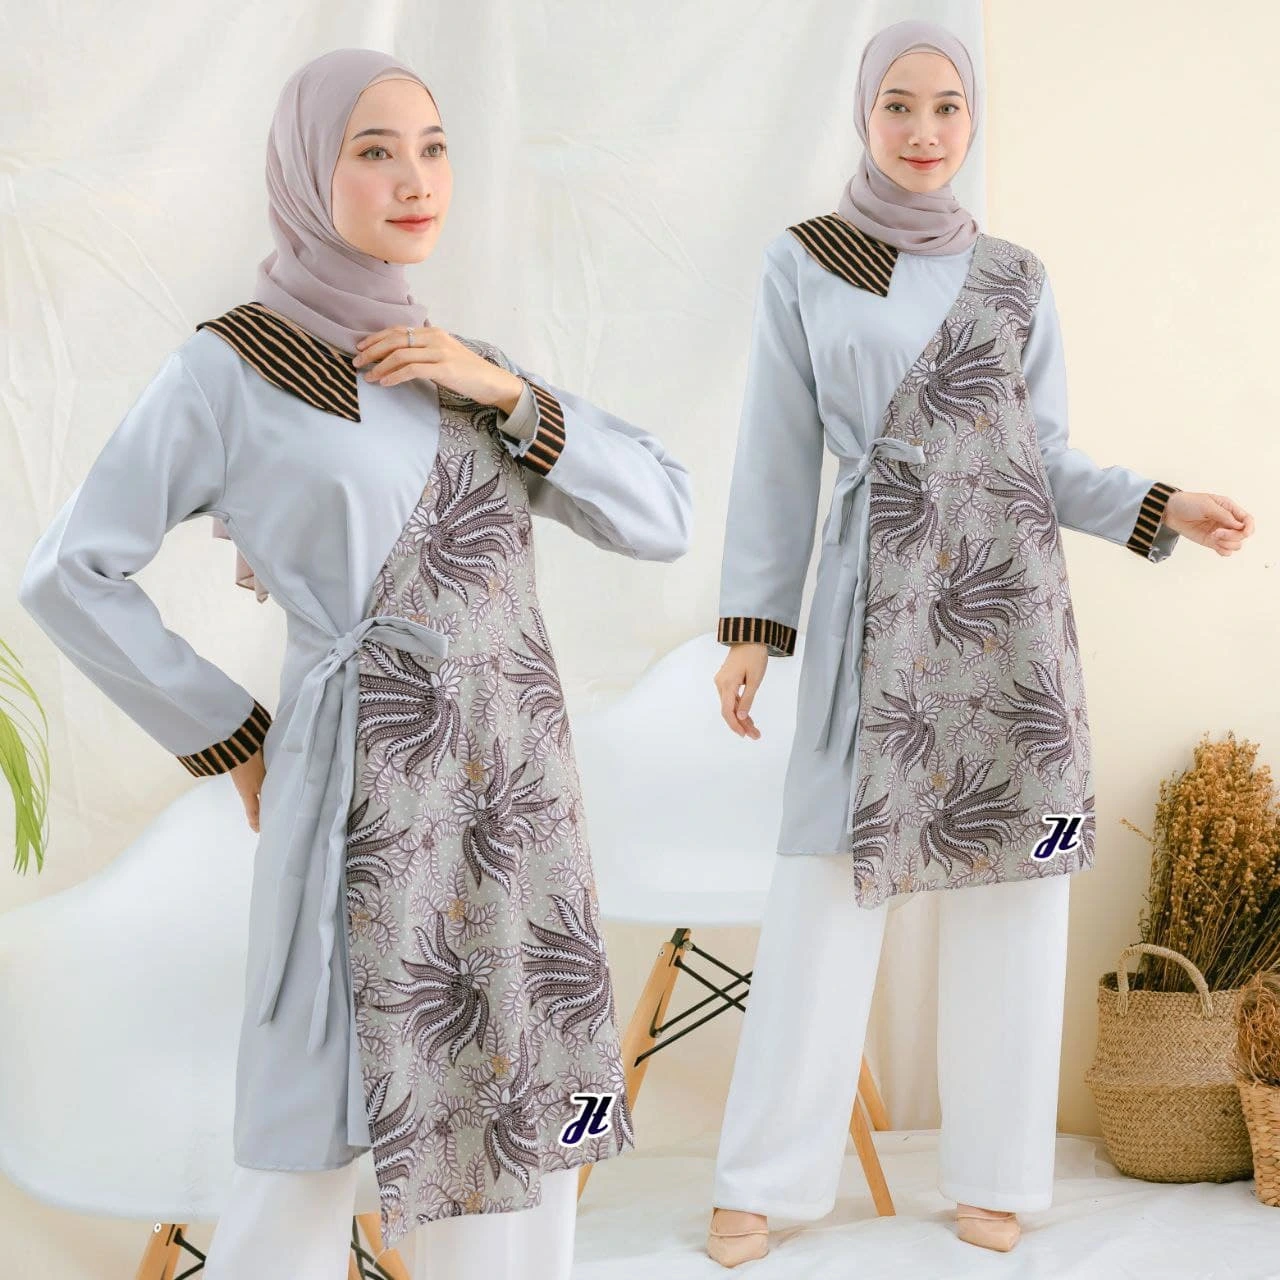 Foto : Model Sedang Mengenakan Baju Batik Variasi